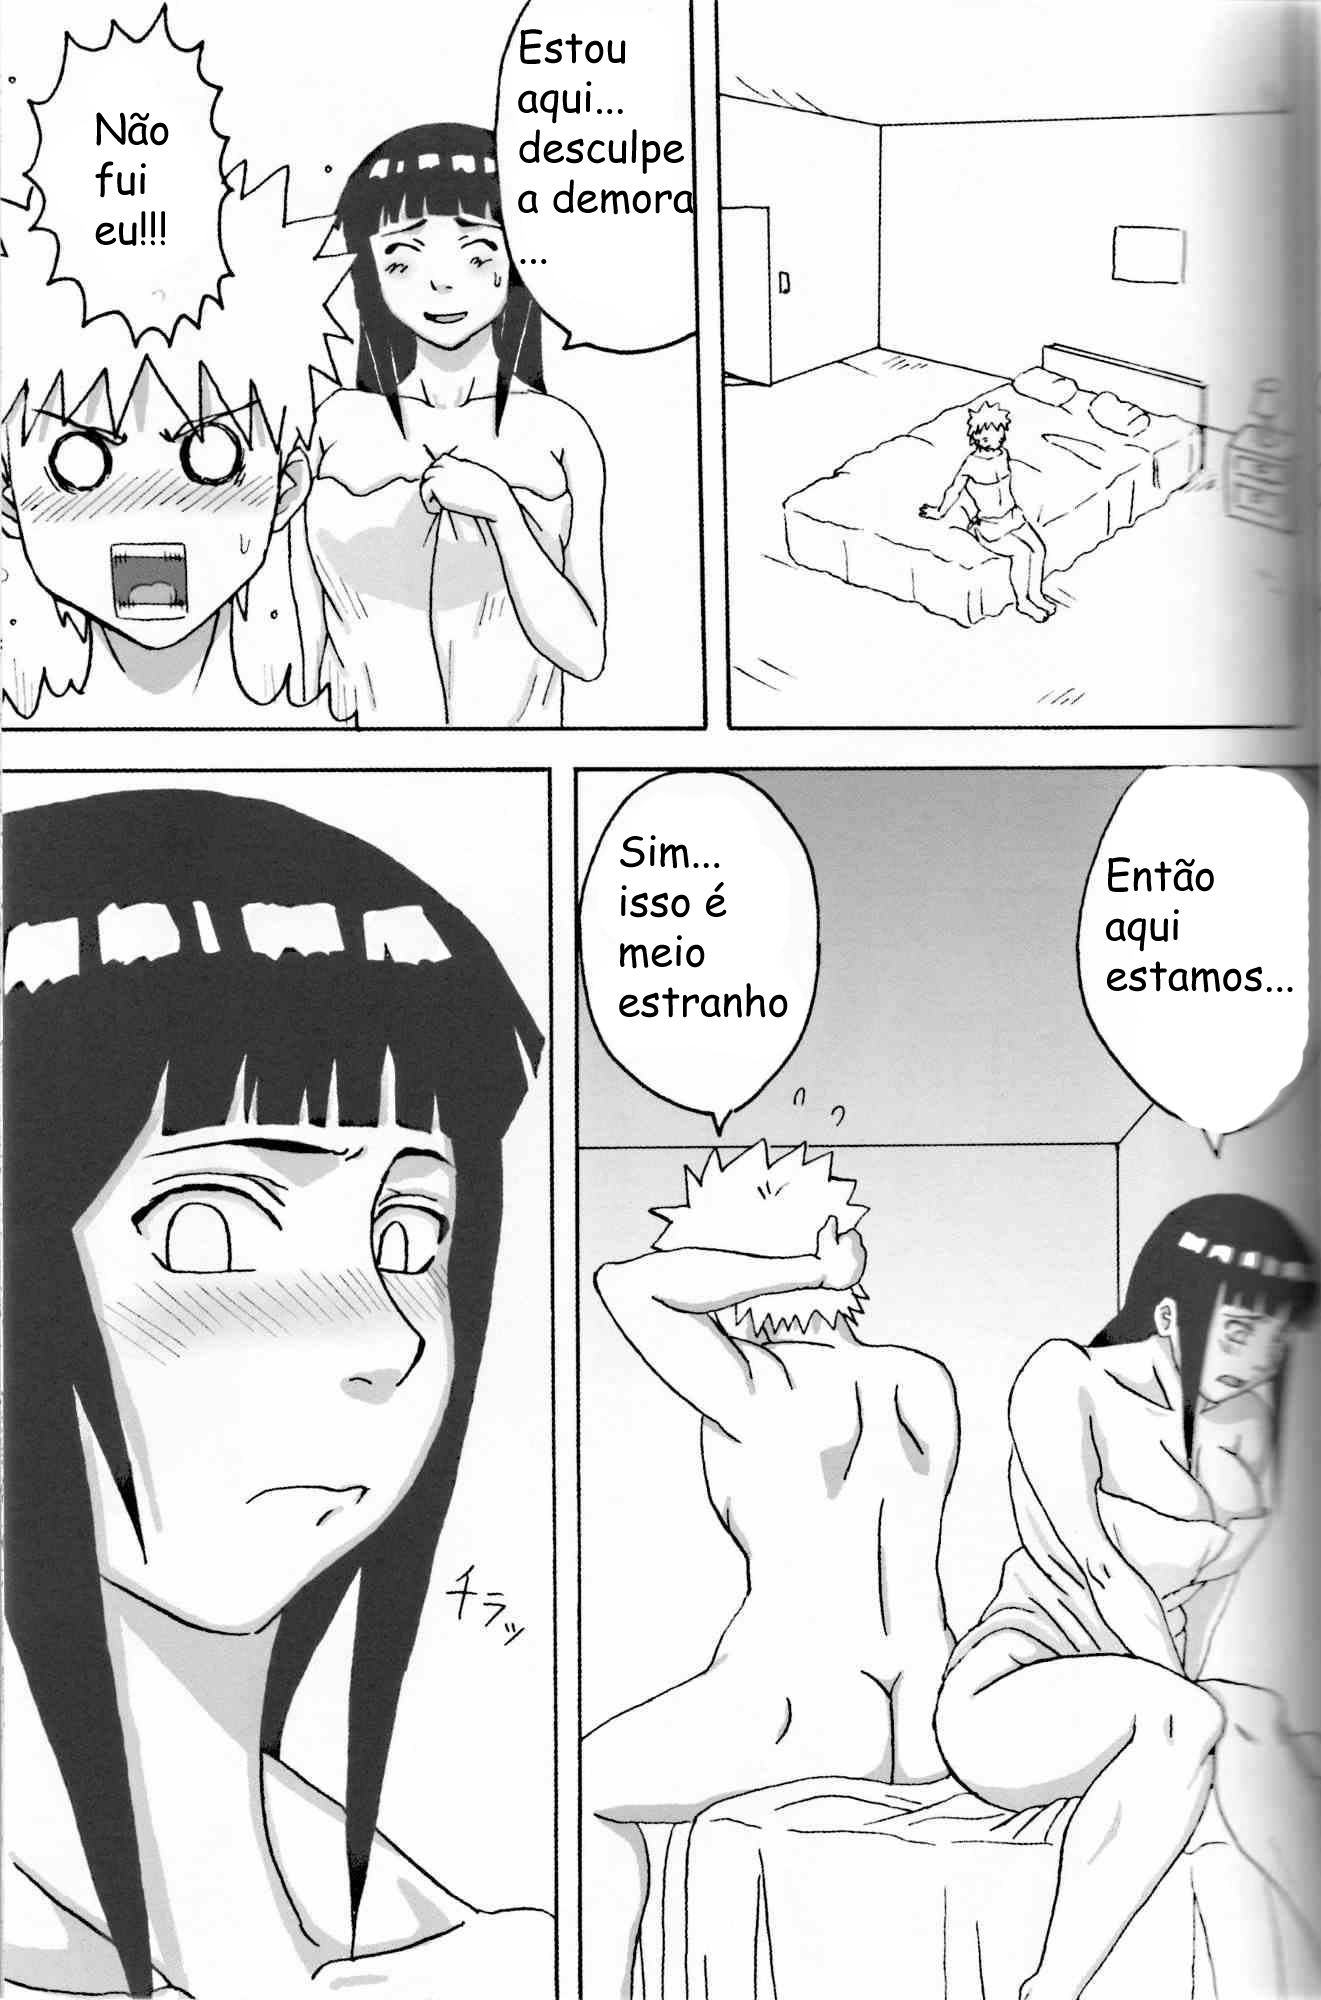 Hinata quer fazer sexo